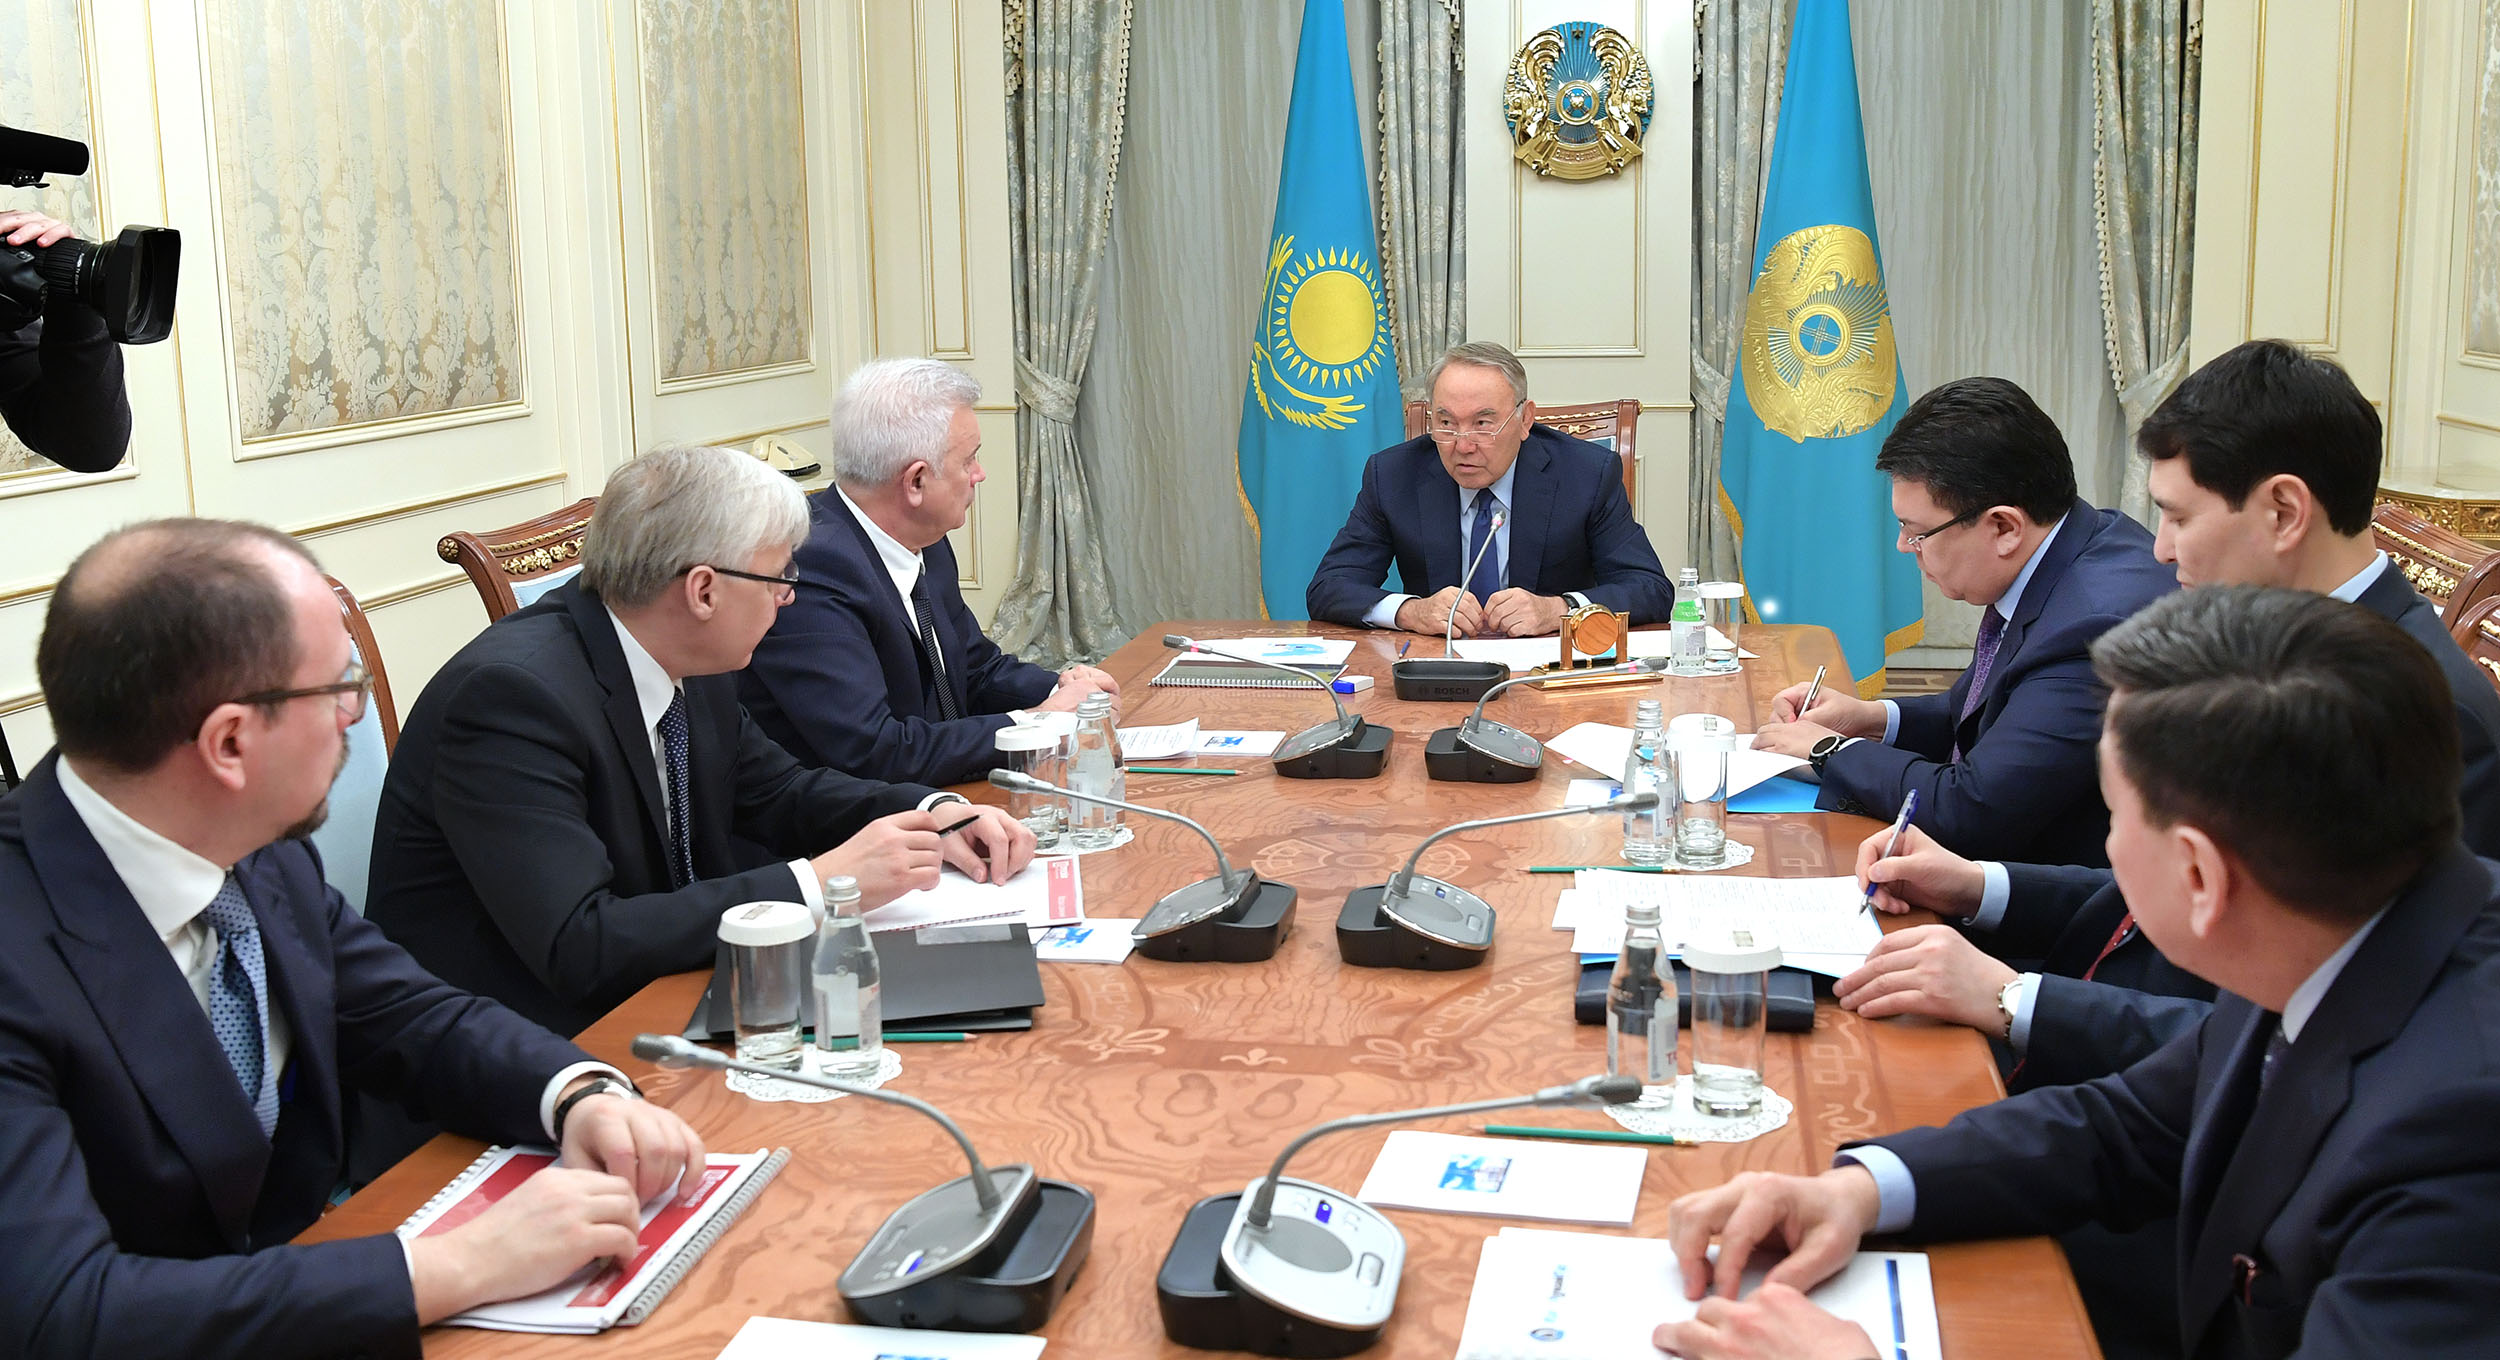 Нурсултан Назарбаев встретился с президентом ПАО "Нефтяная компания "Лукойл"  